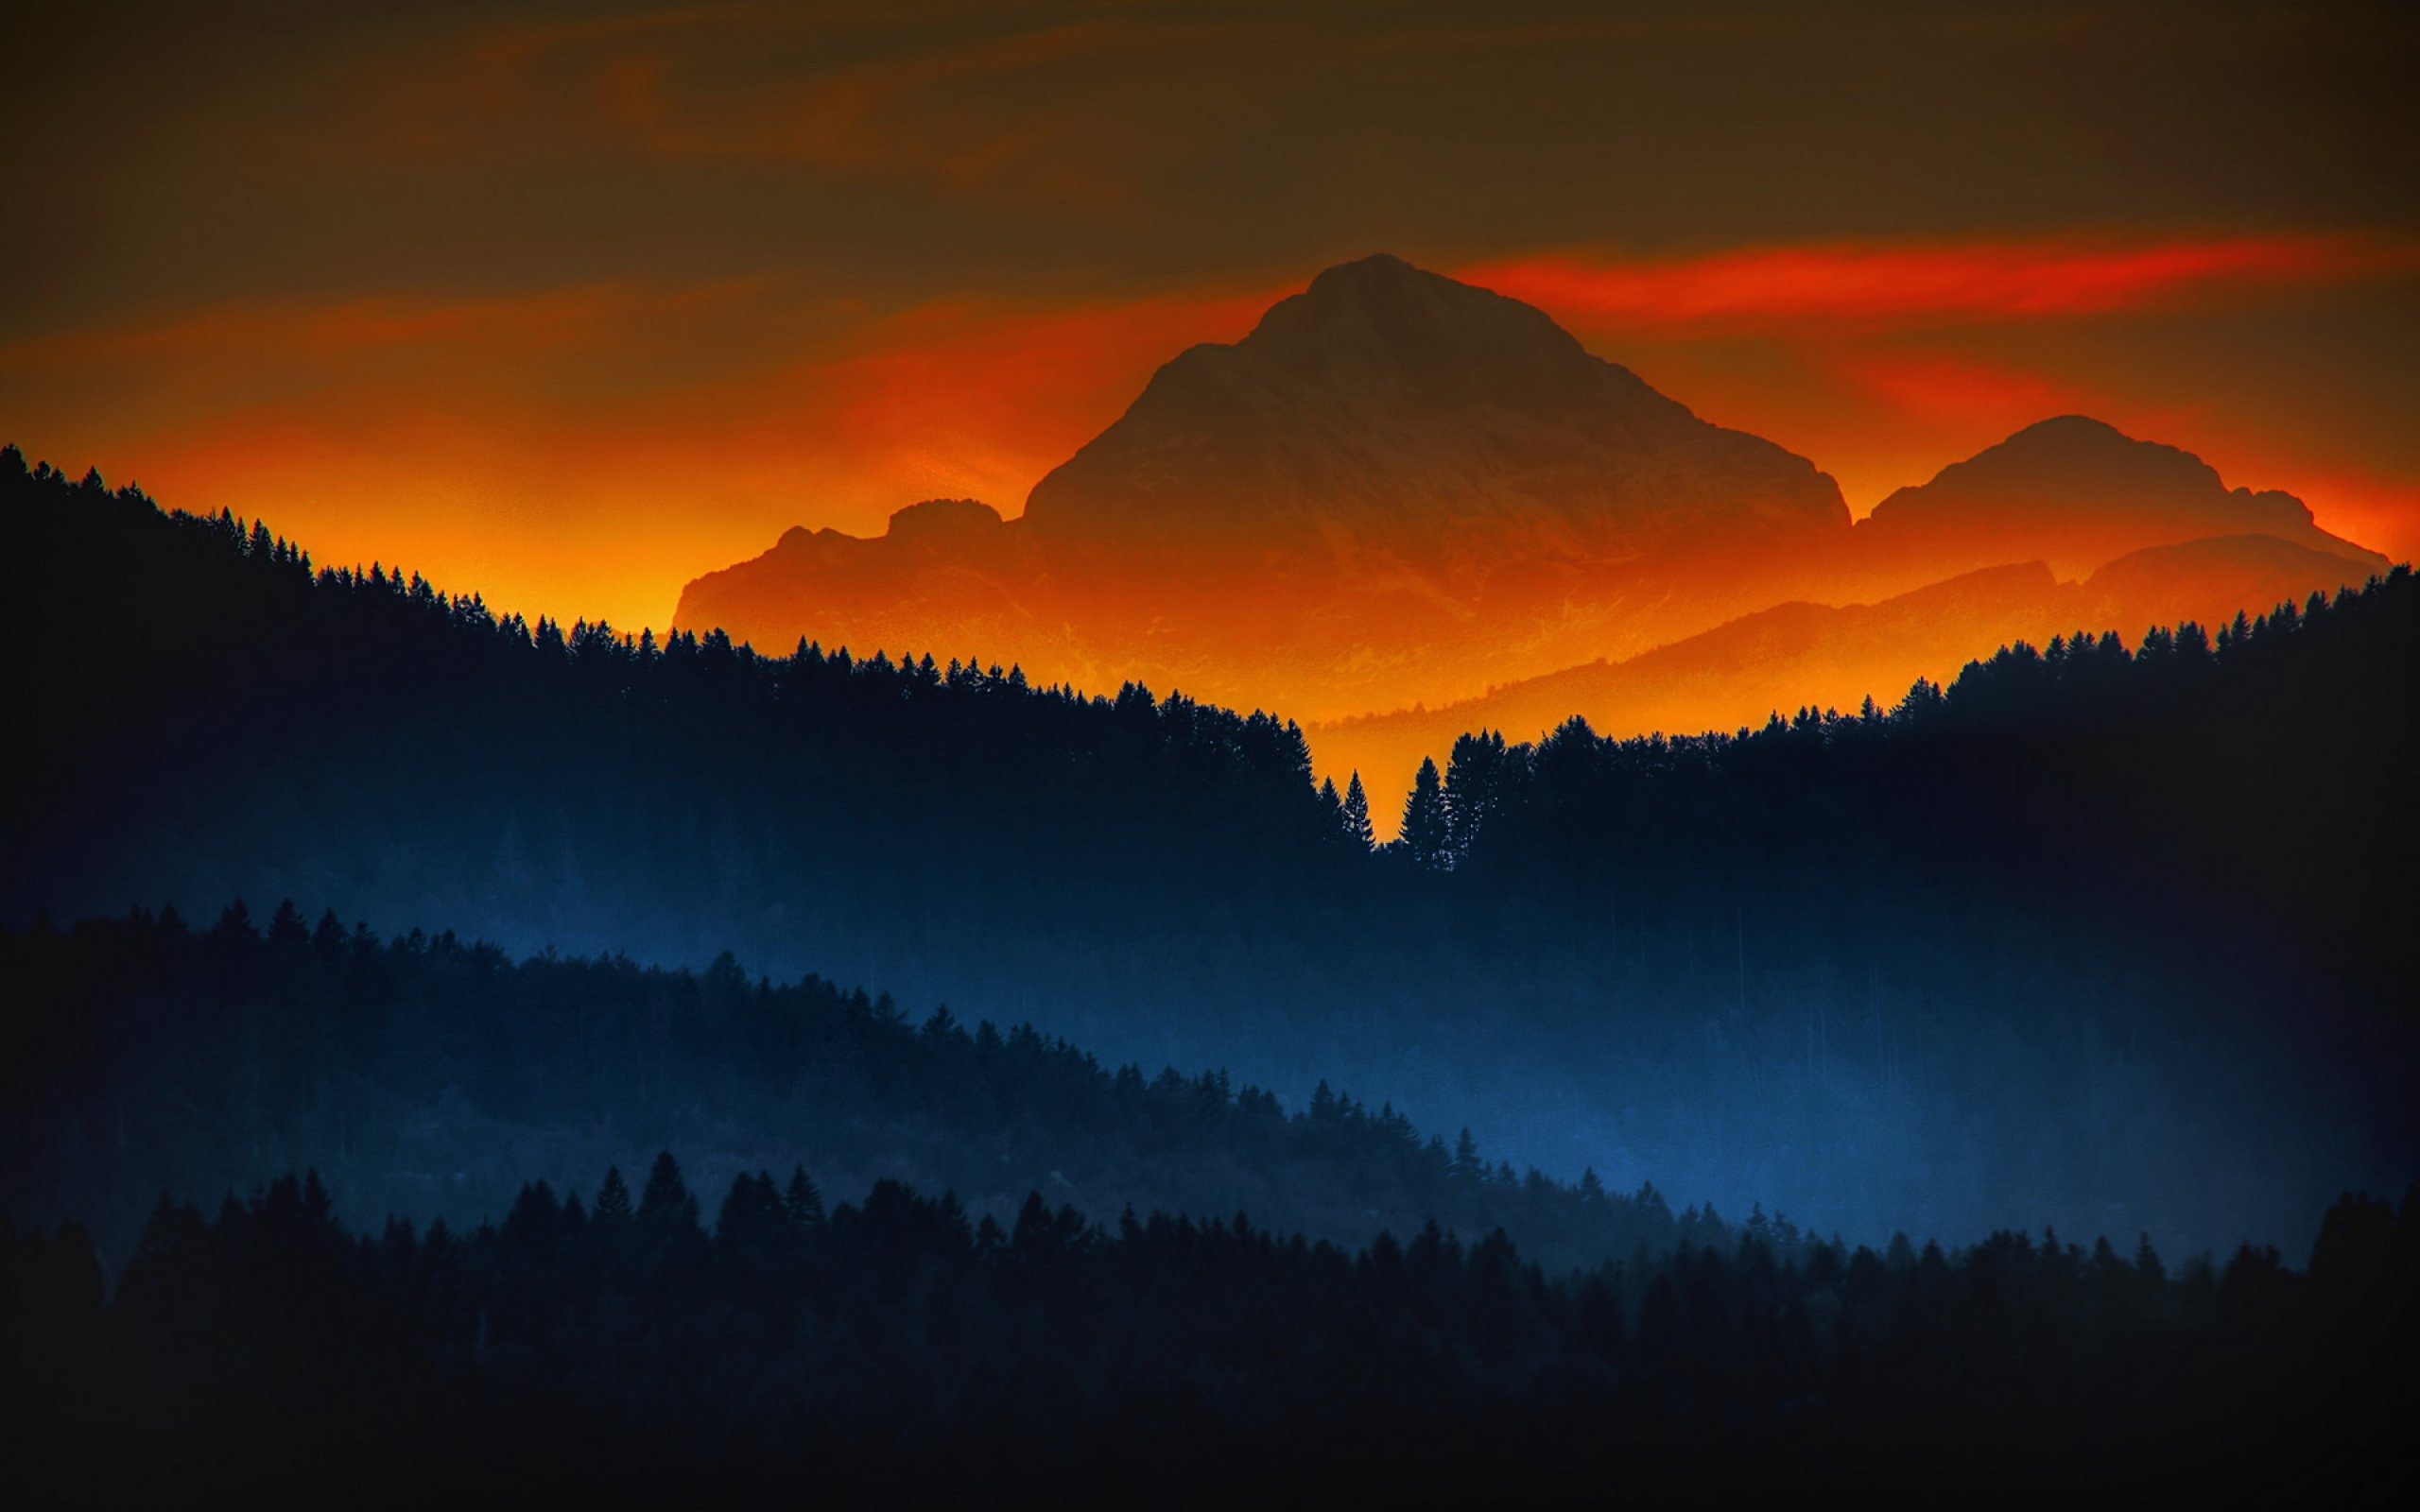 Wallpaper, 2560x1600 px, color, forest, landscape, mountains, nature, sunrise, sunset 2560x1600